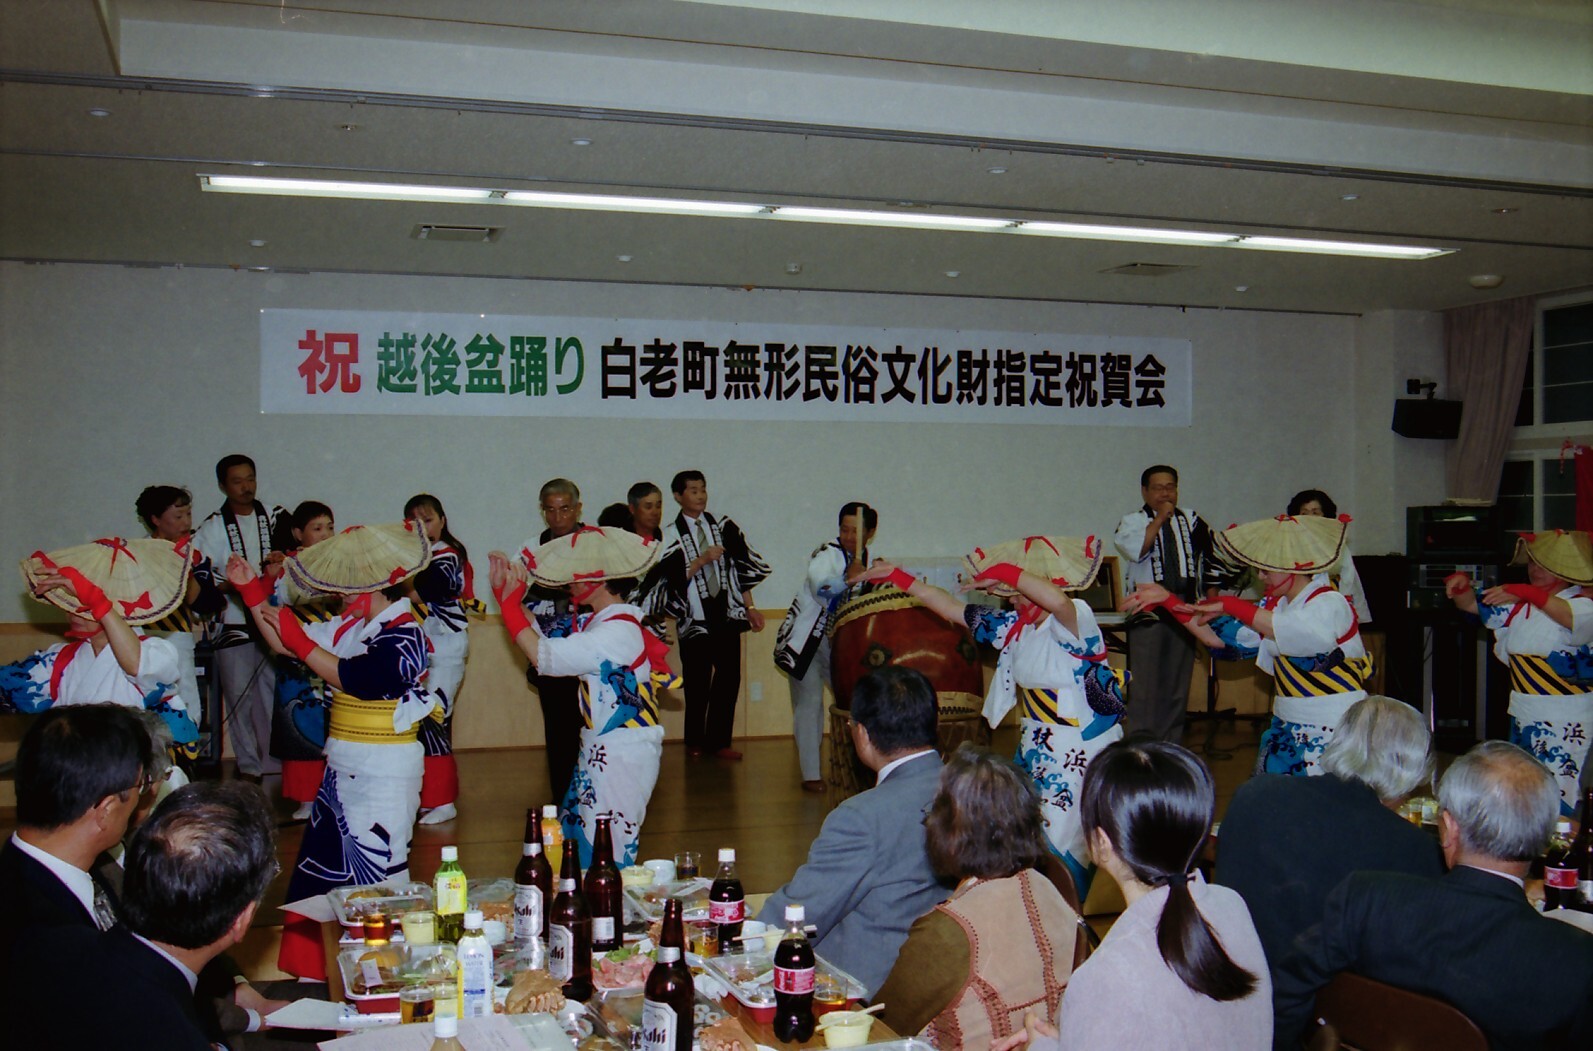  平成13年越後盆踊り白老町無形民俗文化財指定祝賀会の写真